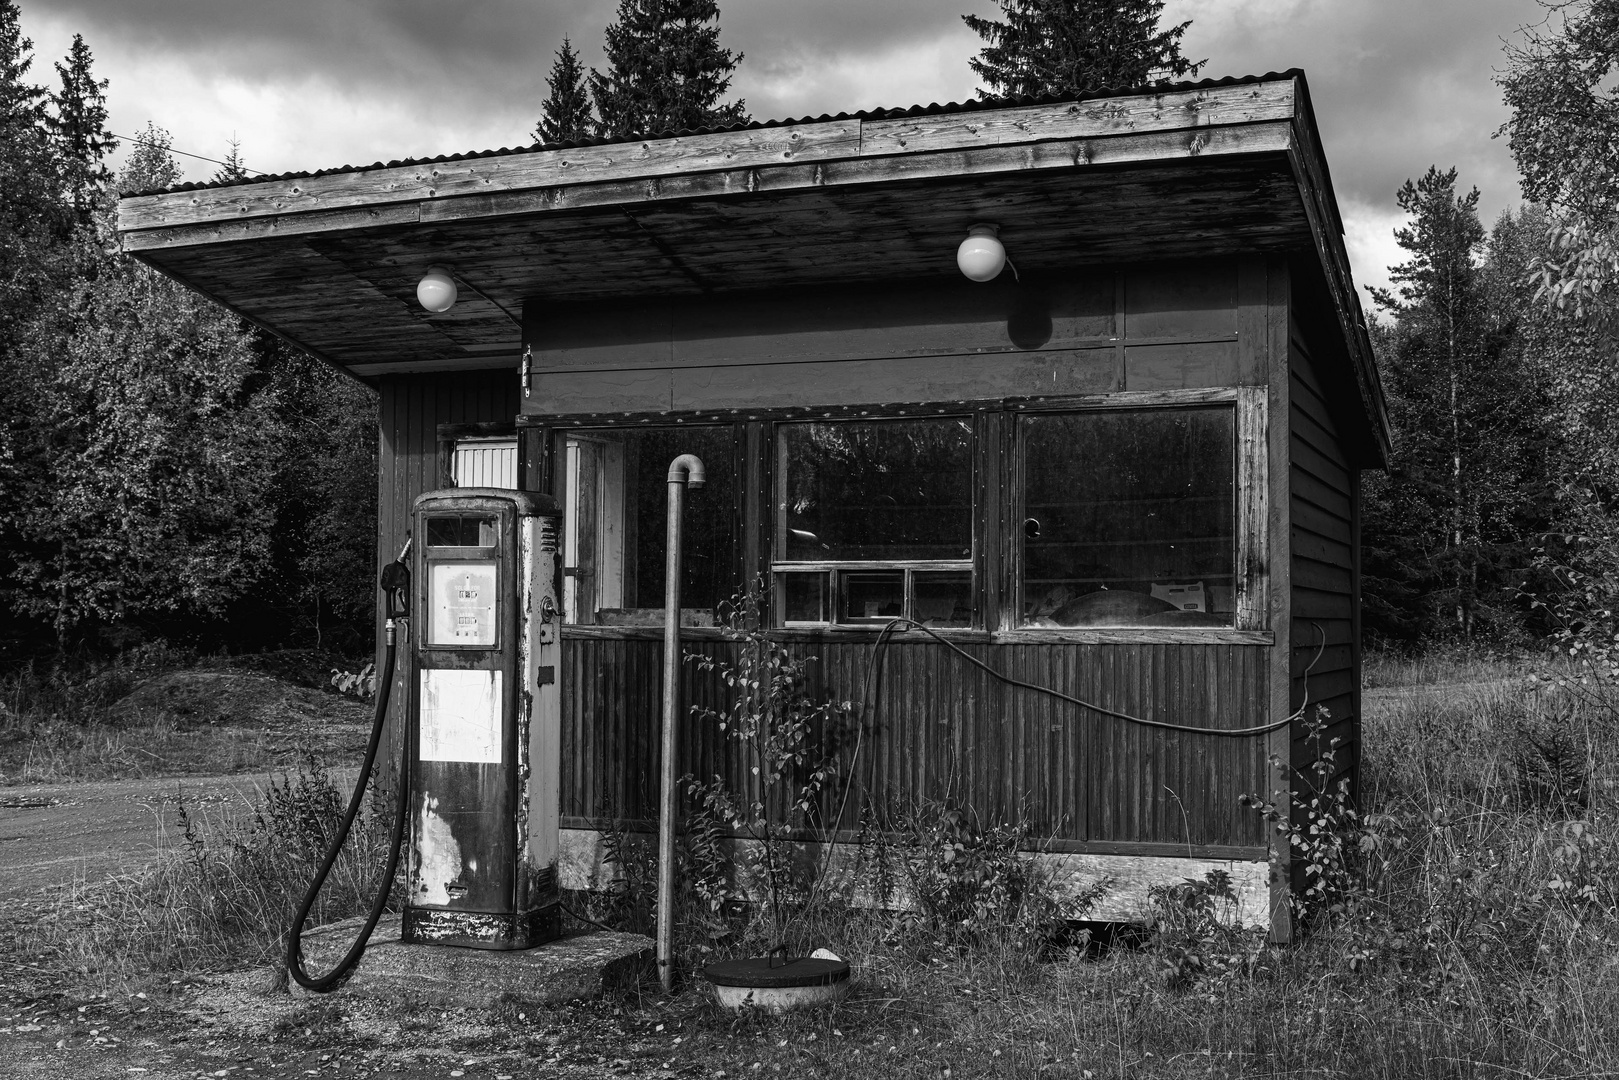 Verlassene Tankstelle / Abandoned gas station